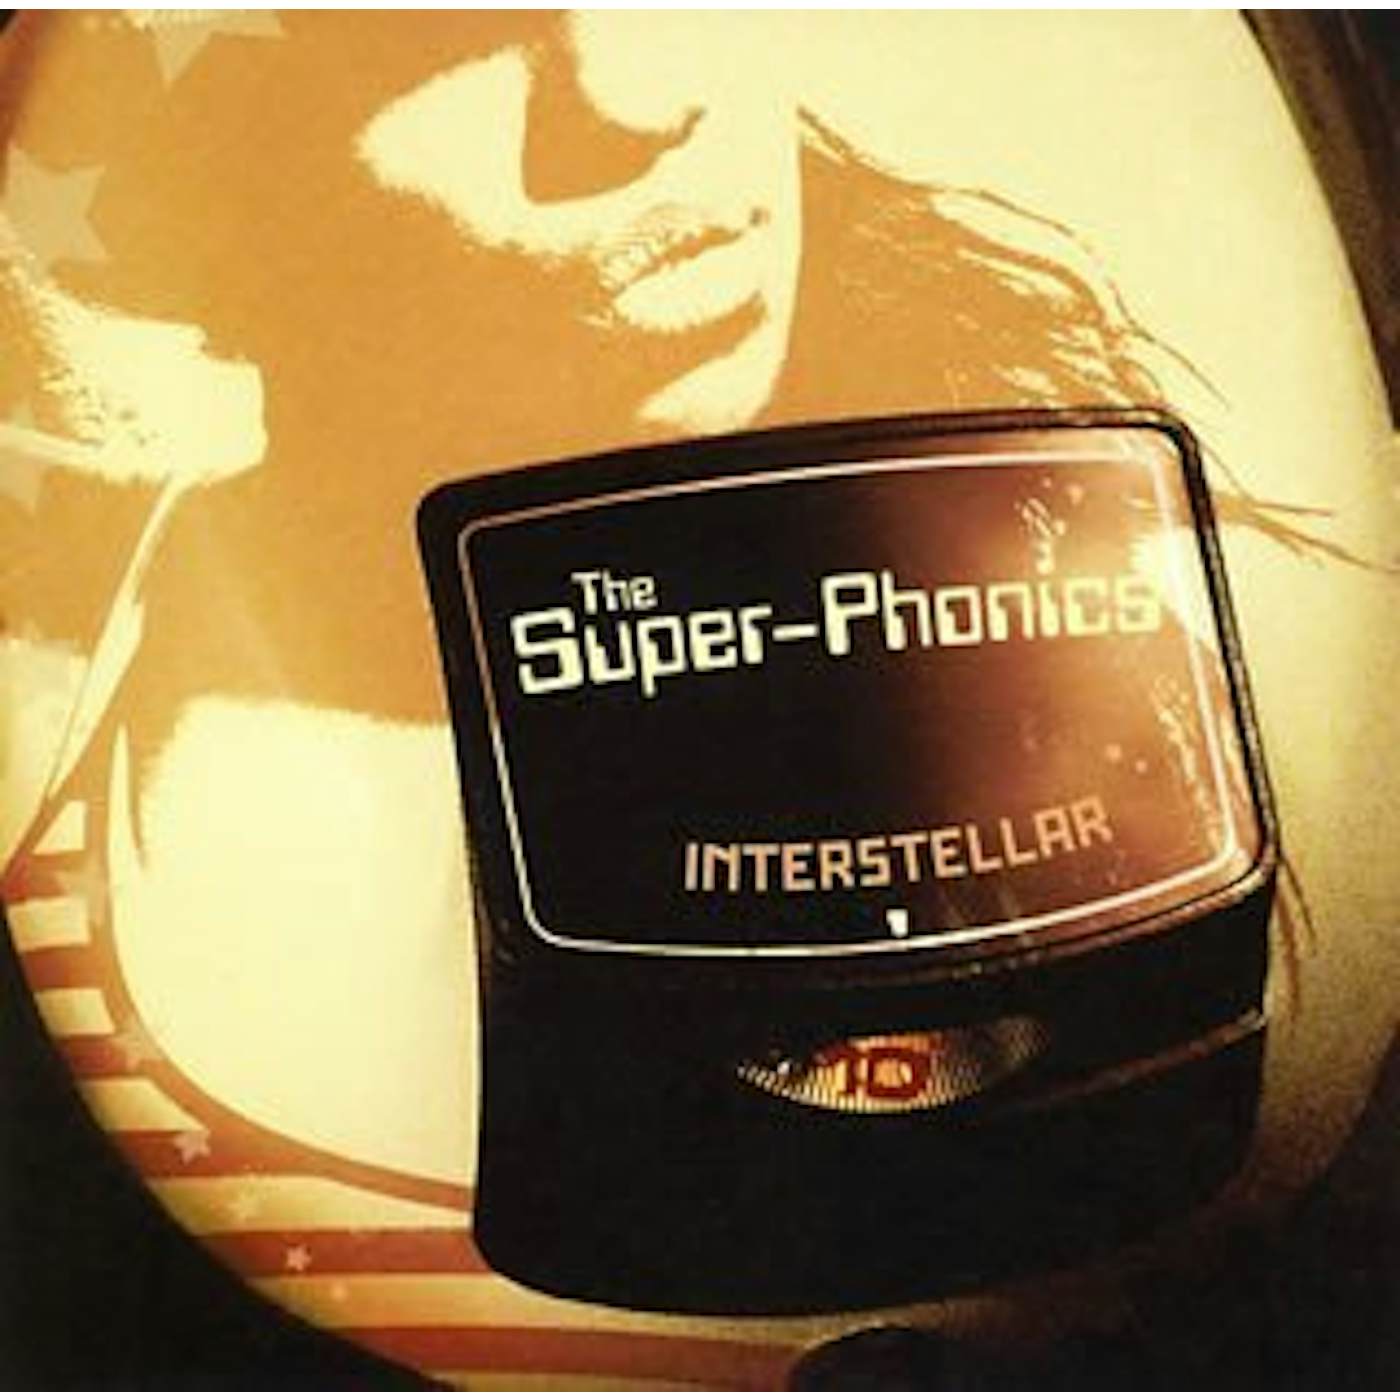 The Super Phonics UNITLED CD